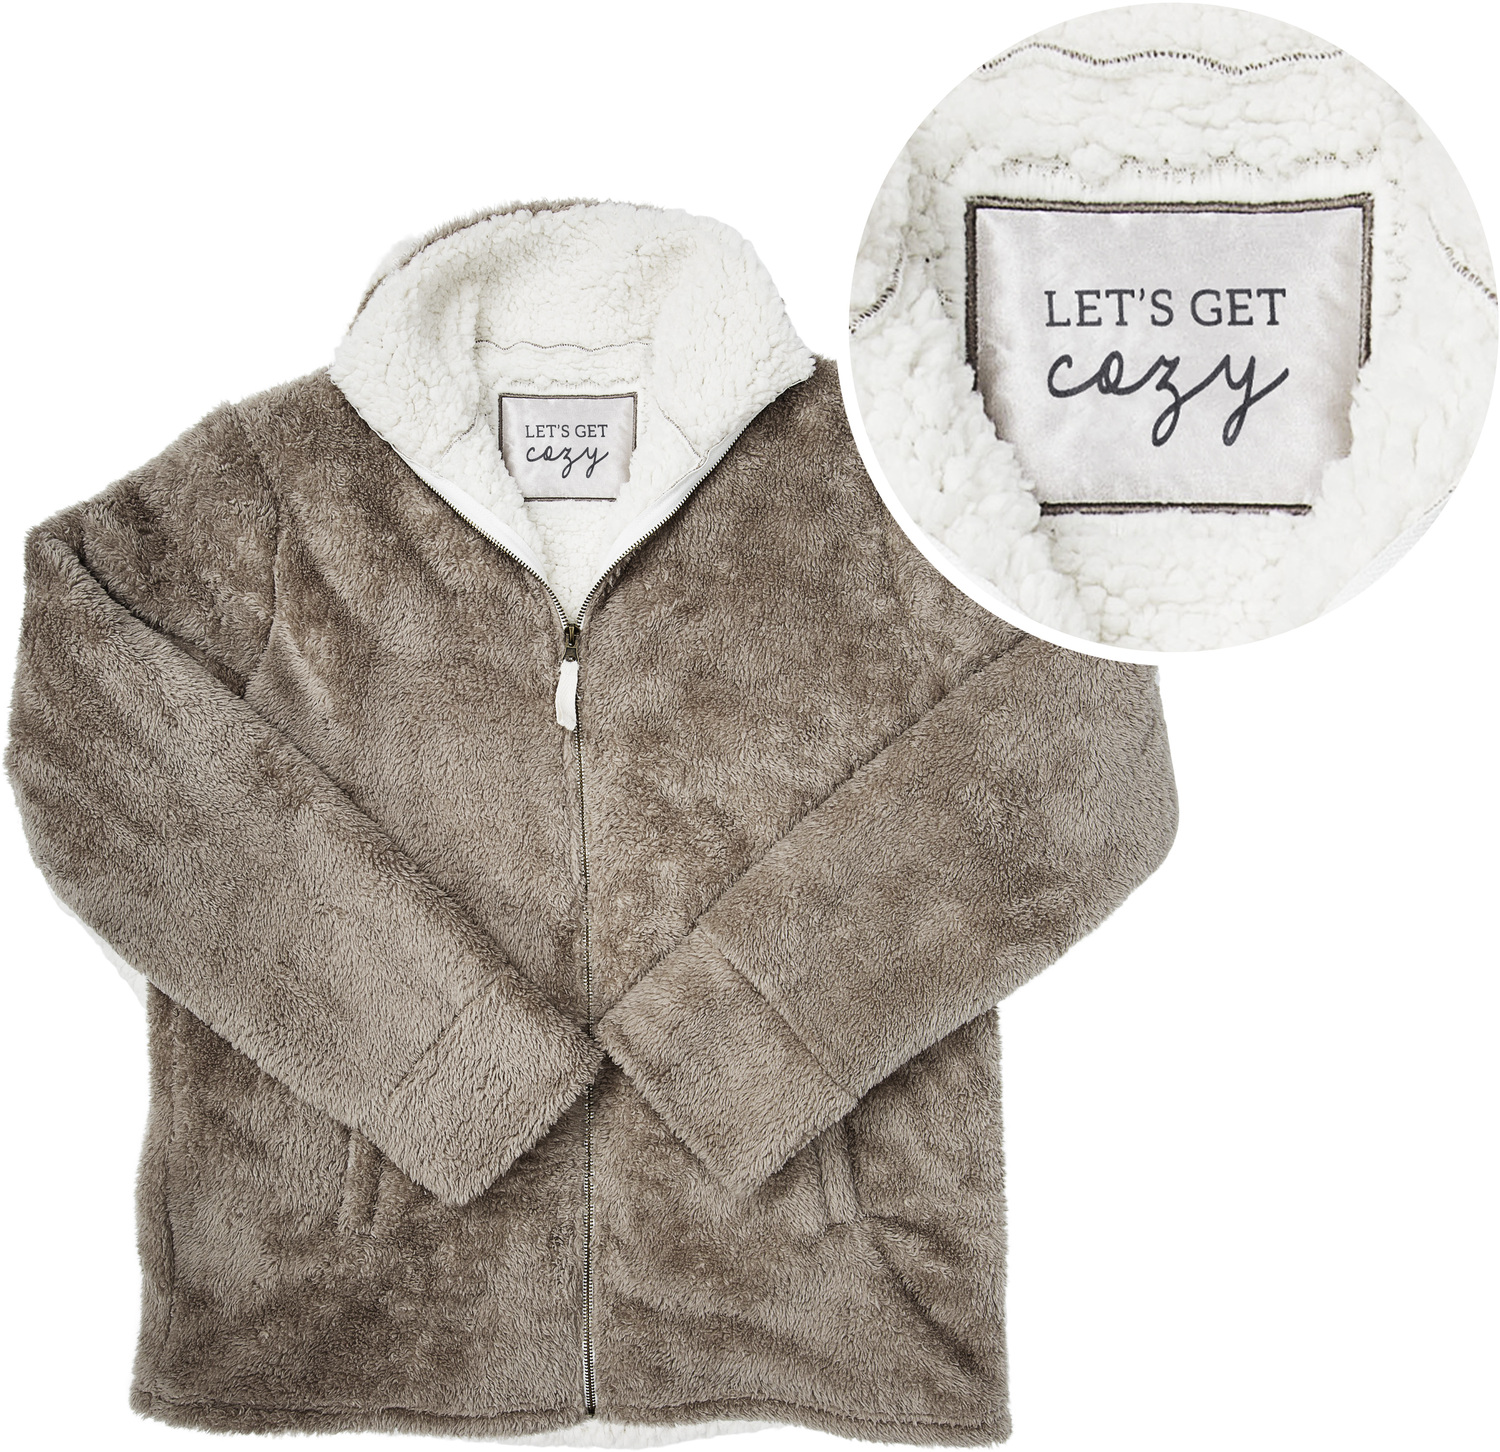 Cozy by Comfort Collection - Cozy - S/M Unisex Fleece Full Zip Sweatshirt